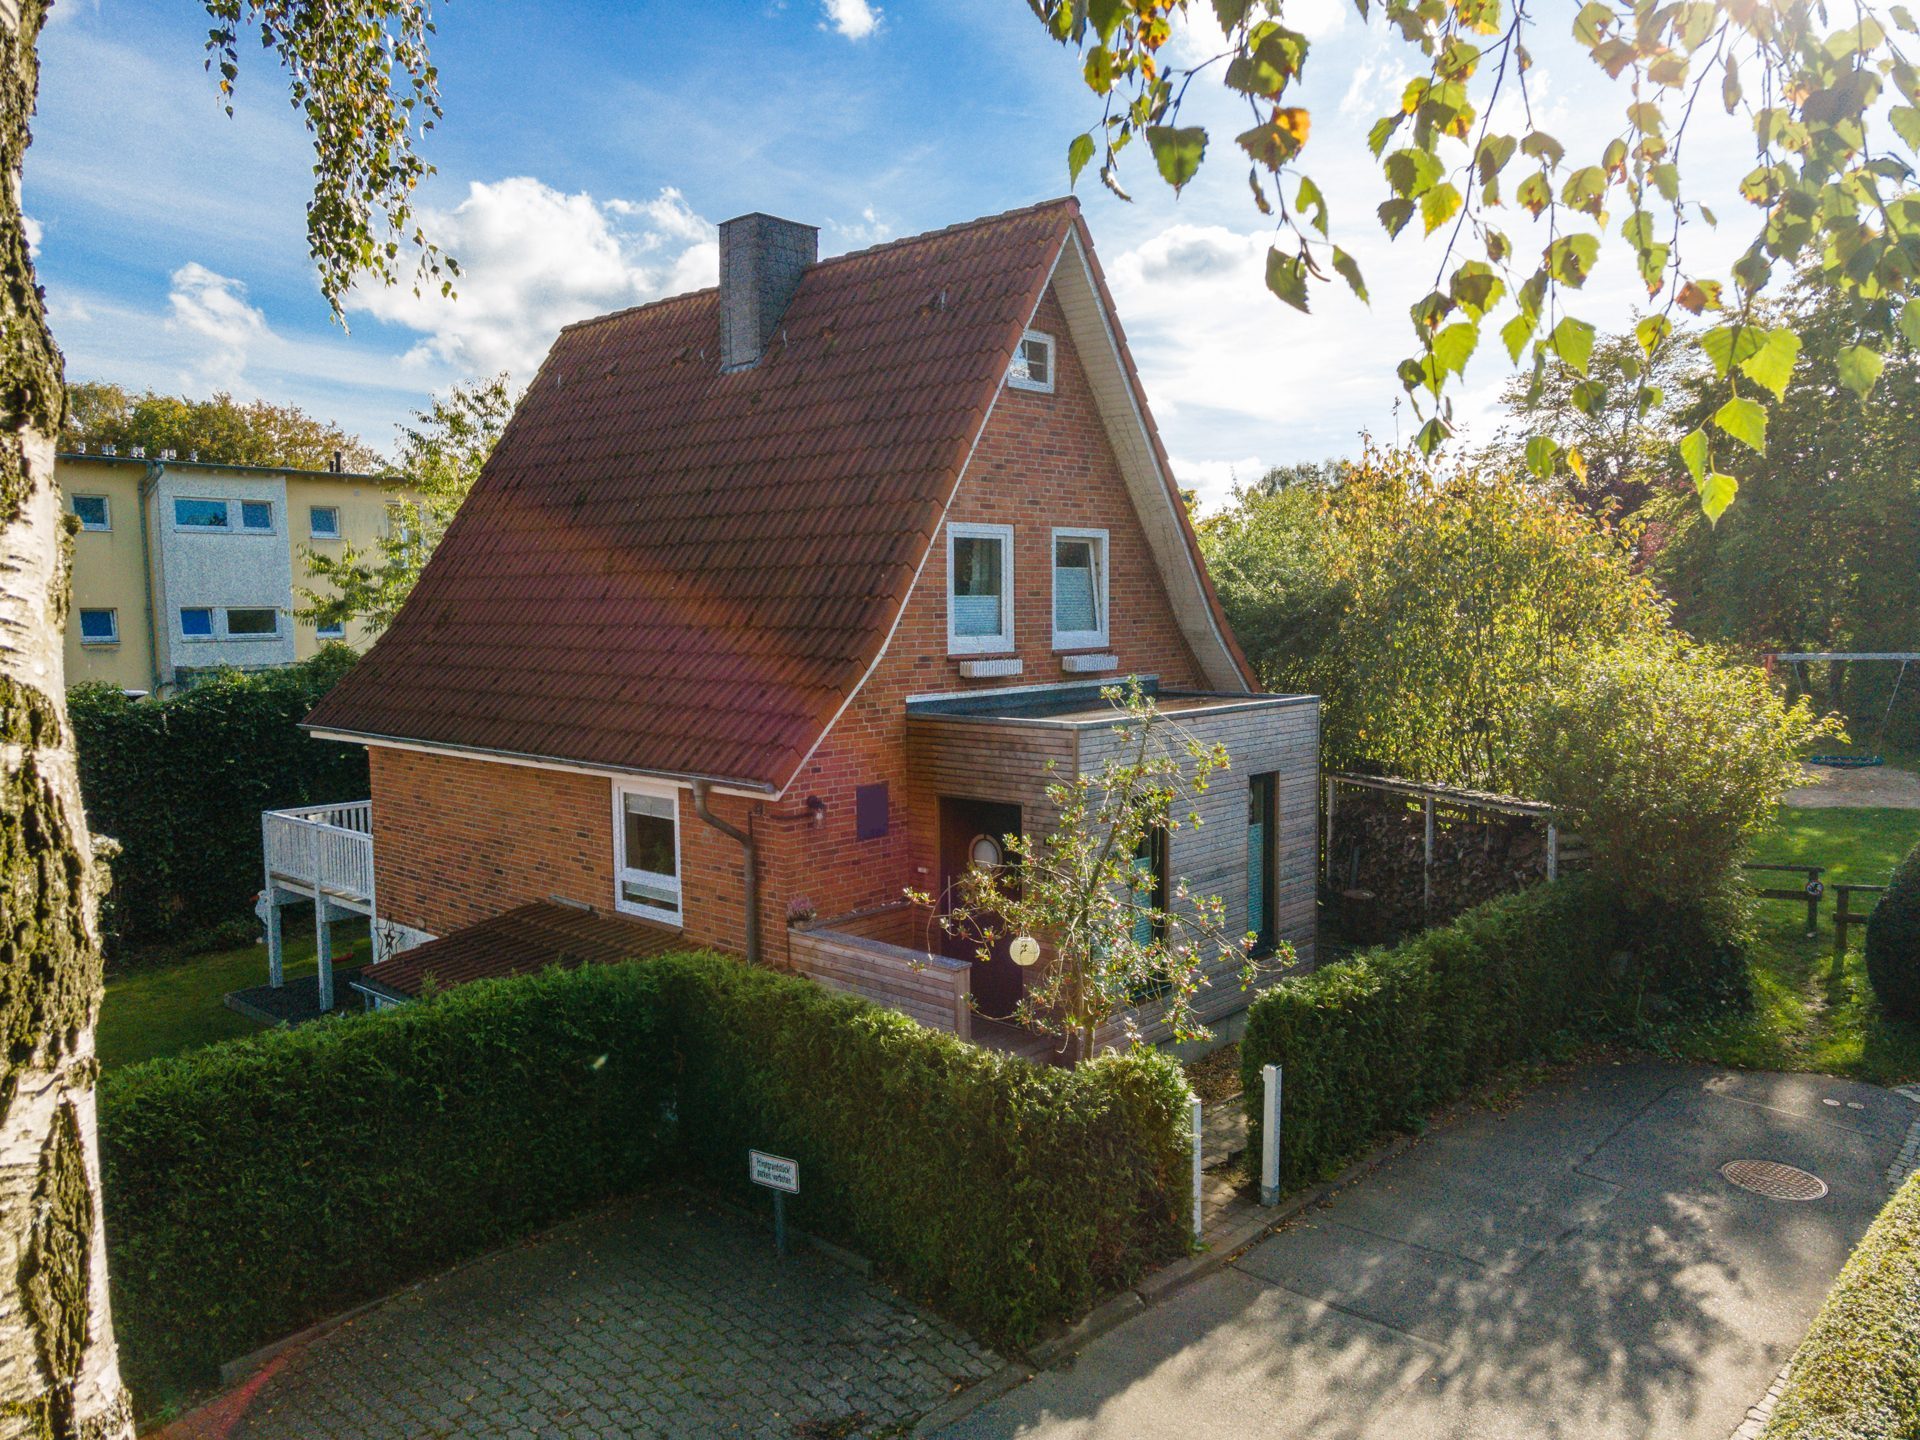 Immobilienangebot - Flensburg / Engelsby - Alle - FL-Sandberg, gemütliches Einfamilienhaus in Sackgassenendlage, 108 qm Wohn-/Nutzfläche + Garage!